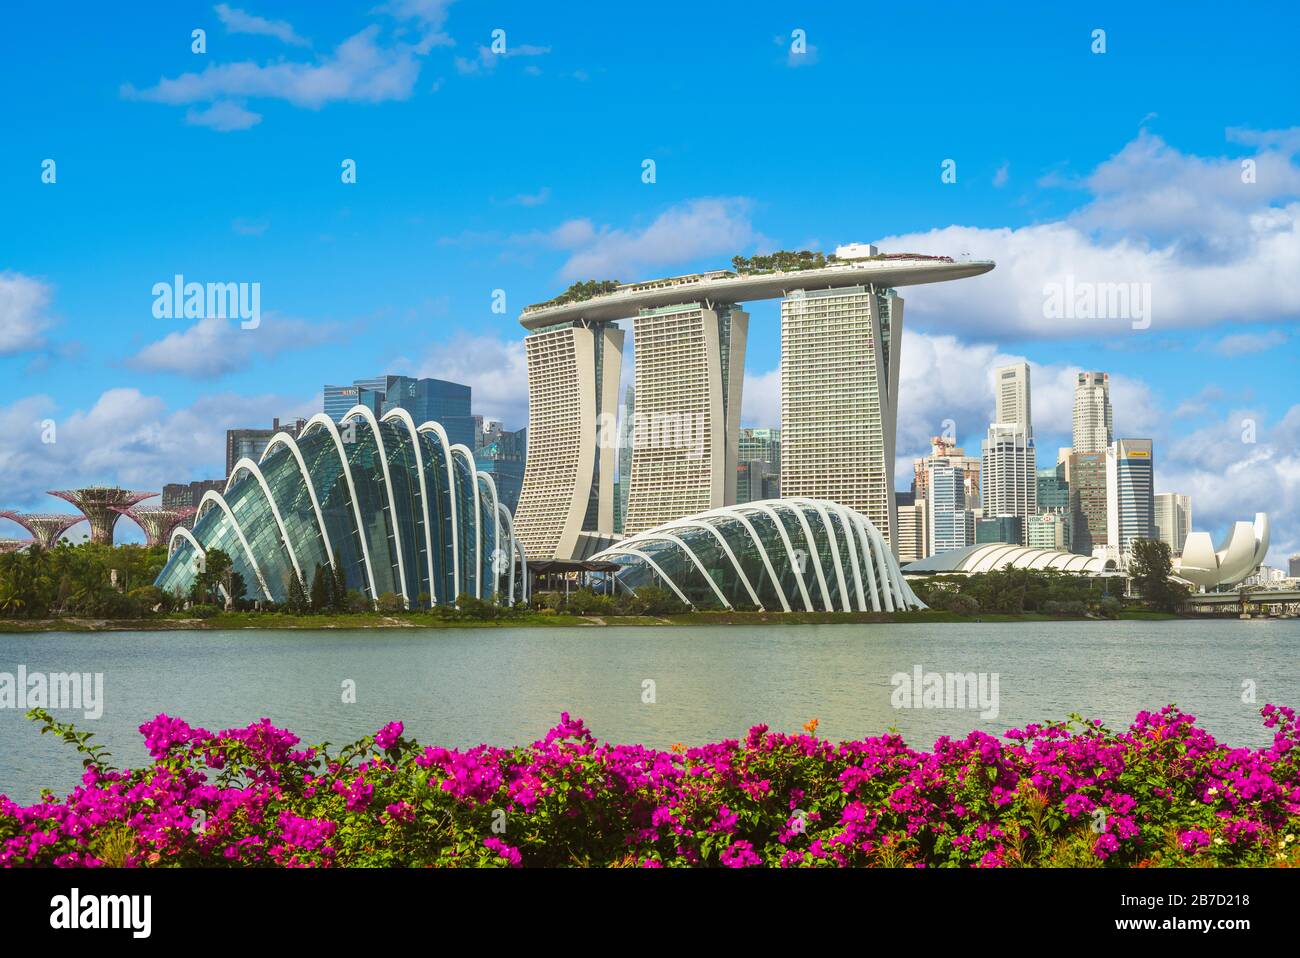 Singapur - 3. Februar 2020: Skyline von singapur an der Marina Bay mit ikonischem Gebäude wie Supertree, Marina Bay Sands, kunstwissenschaftlichem Museum. Stockfoto